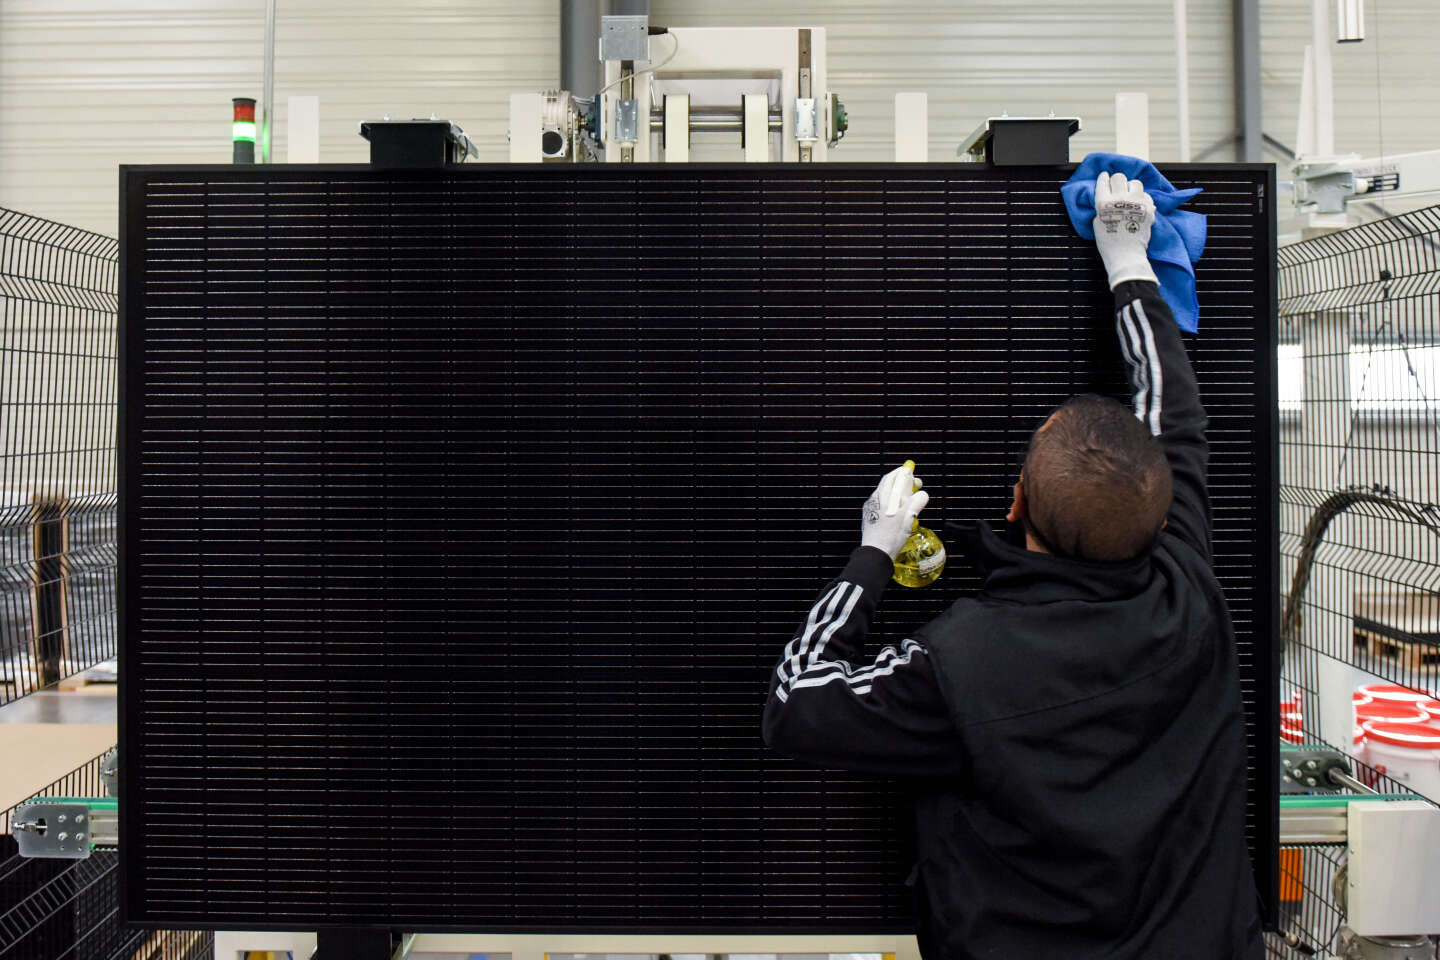 Systovi, fabricant français de panneaux solaires, annonce la cessation de ses activités